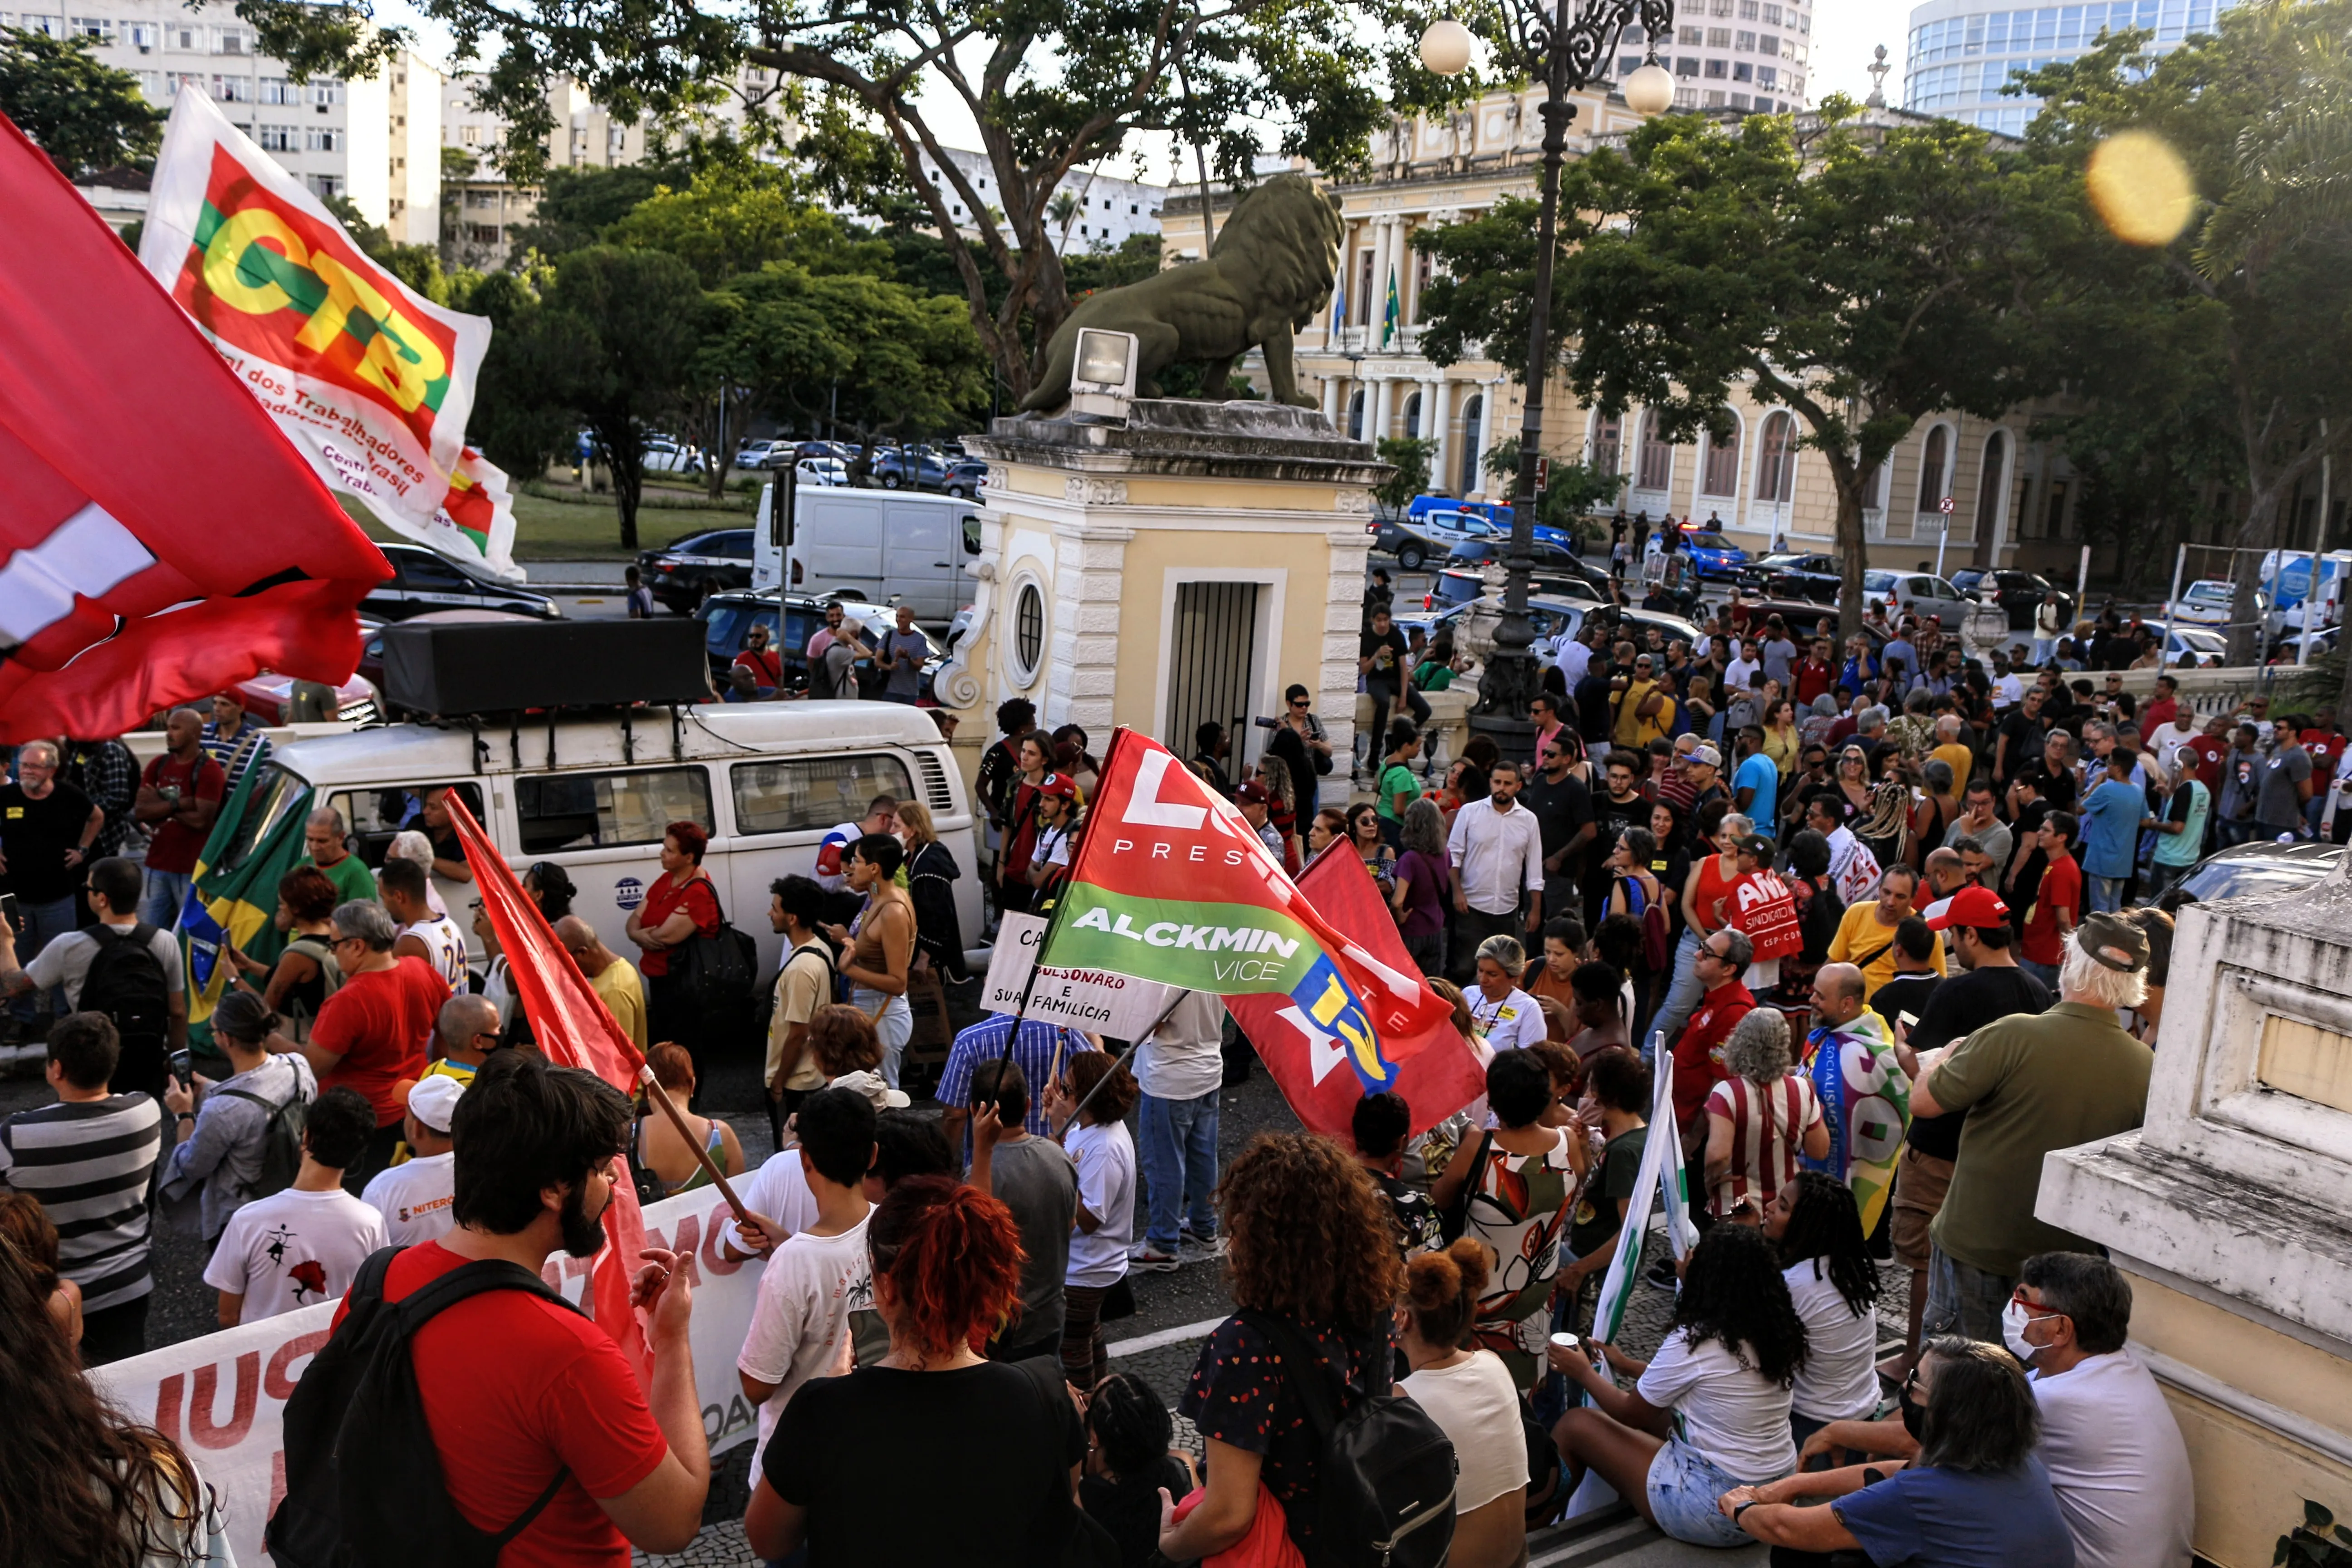 Manifestantes se reuniram em frente a Câmara Municipal de Niterói